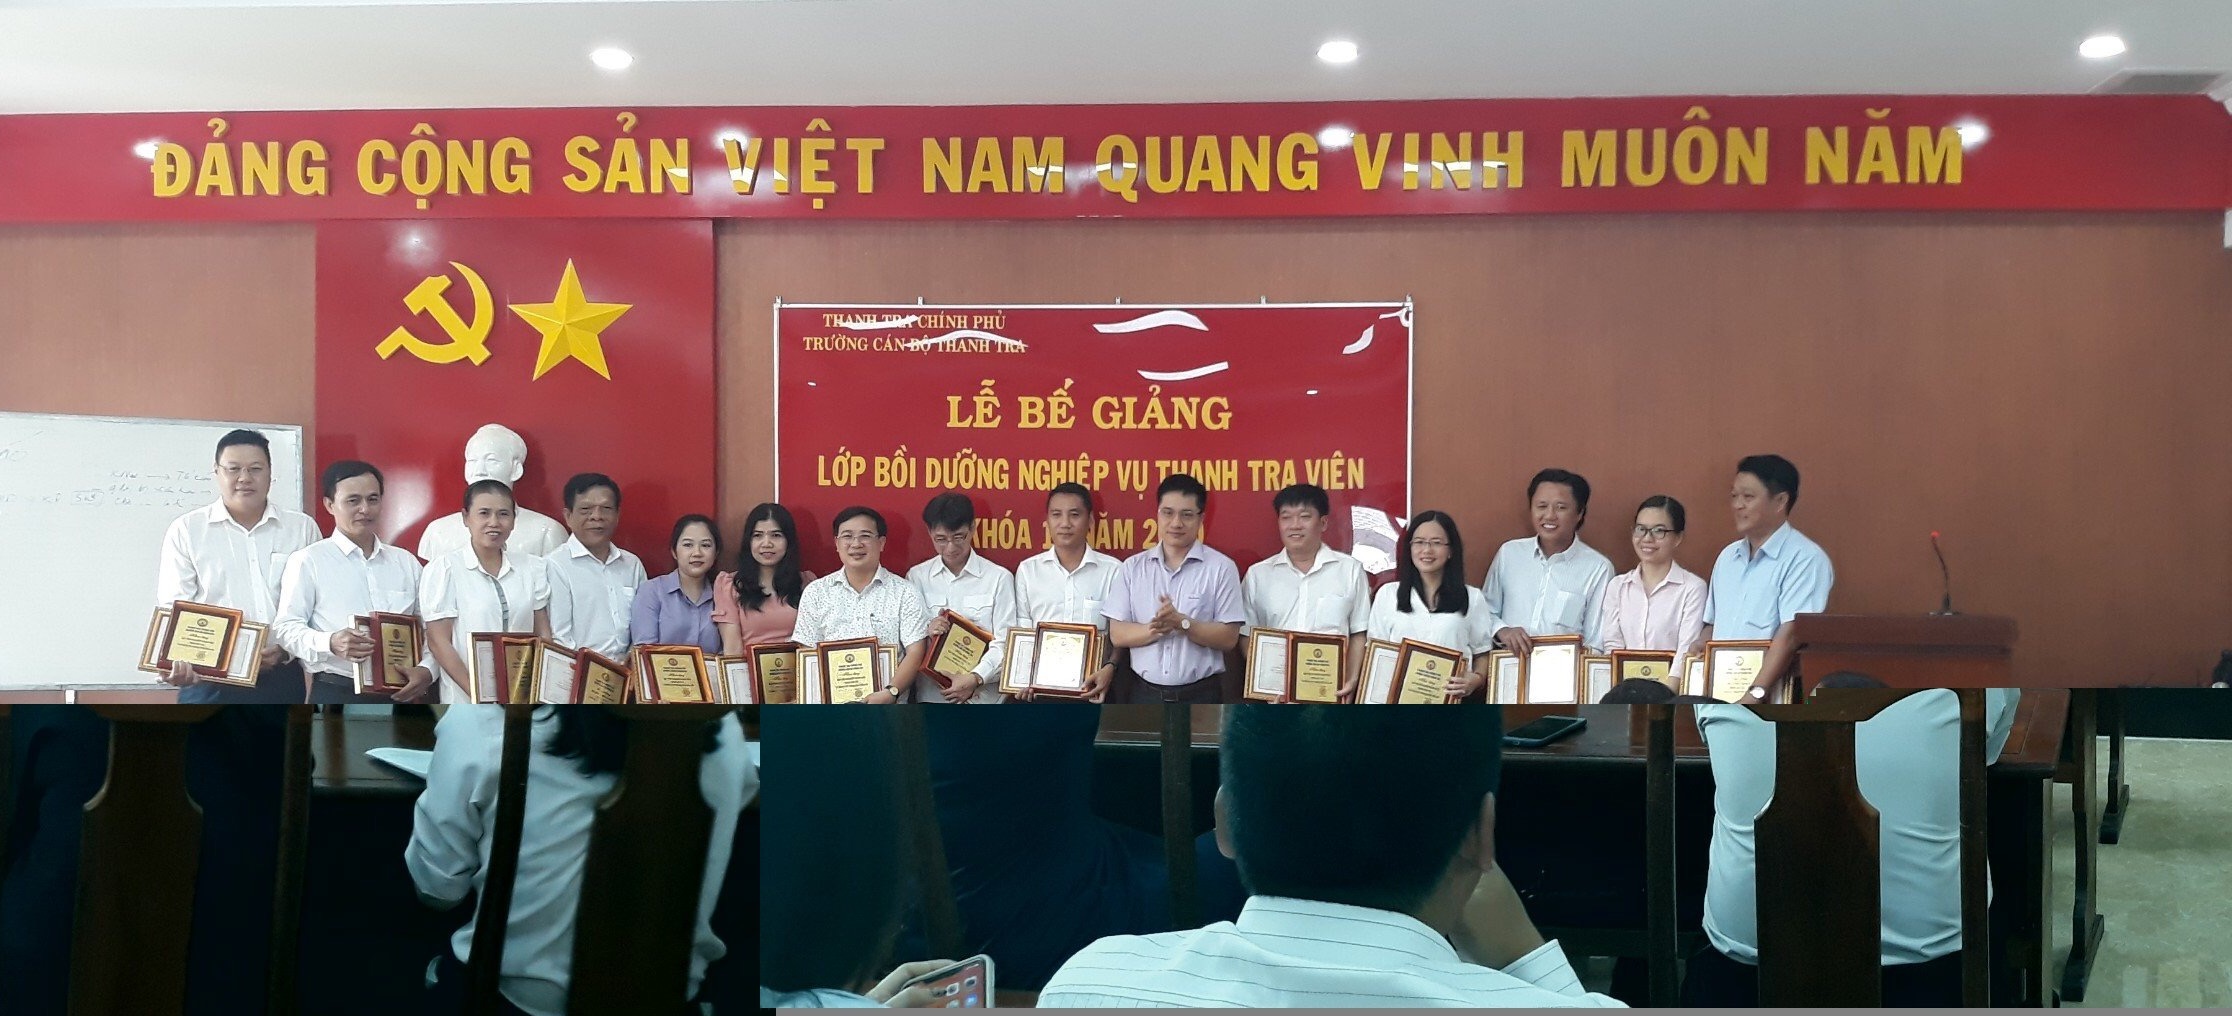 TS. Trịnh Văn Toàn Phó Hiệu trưởng Trg CBTT trao giấy khen và kỷ niệm chương cho học viên